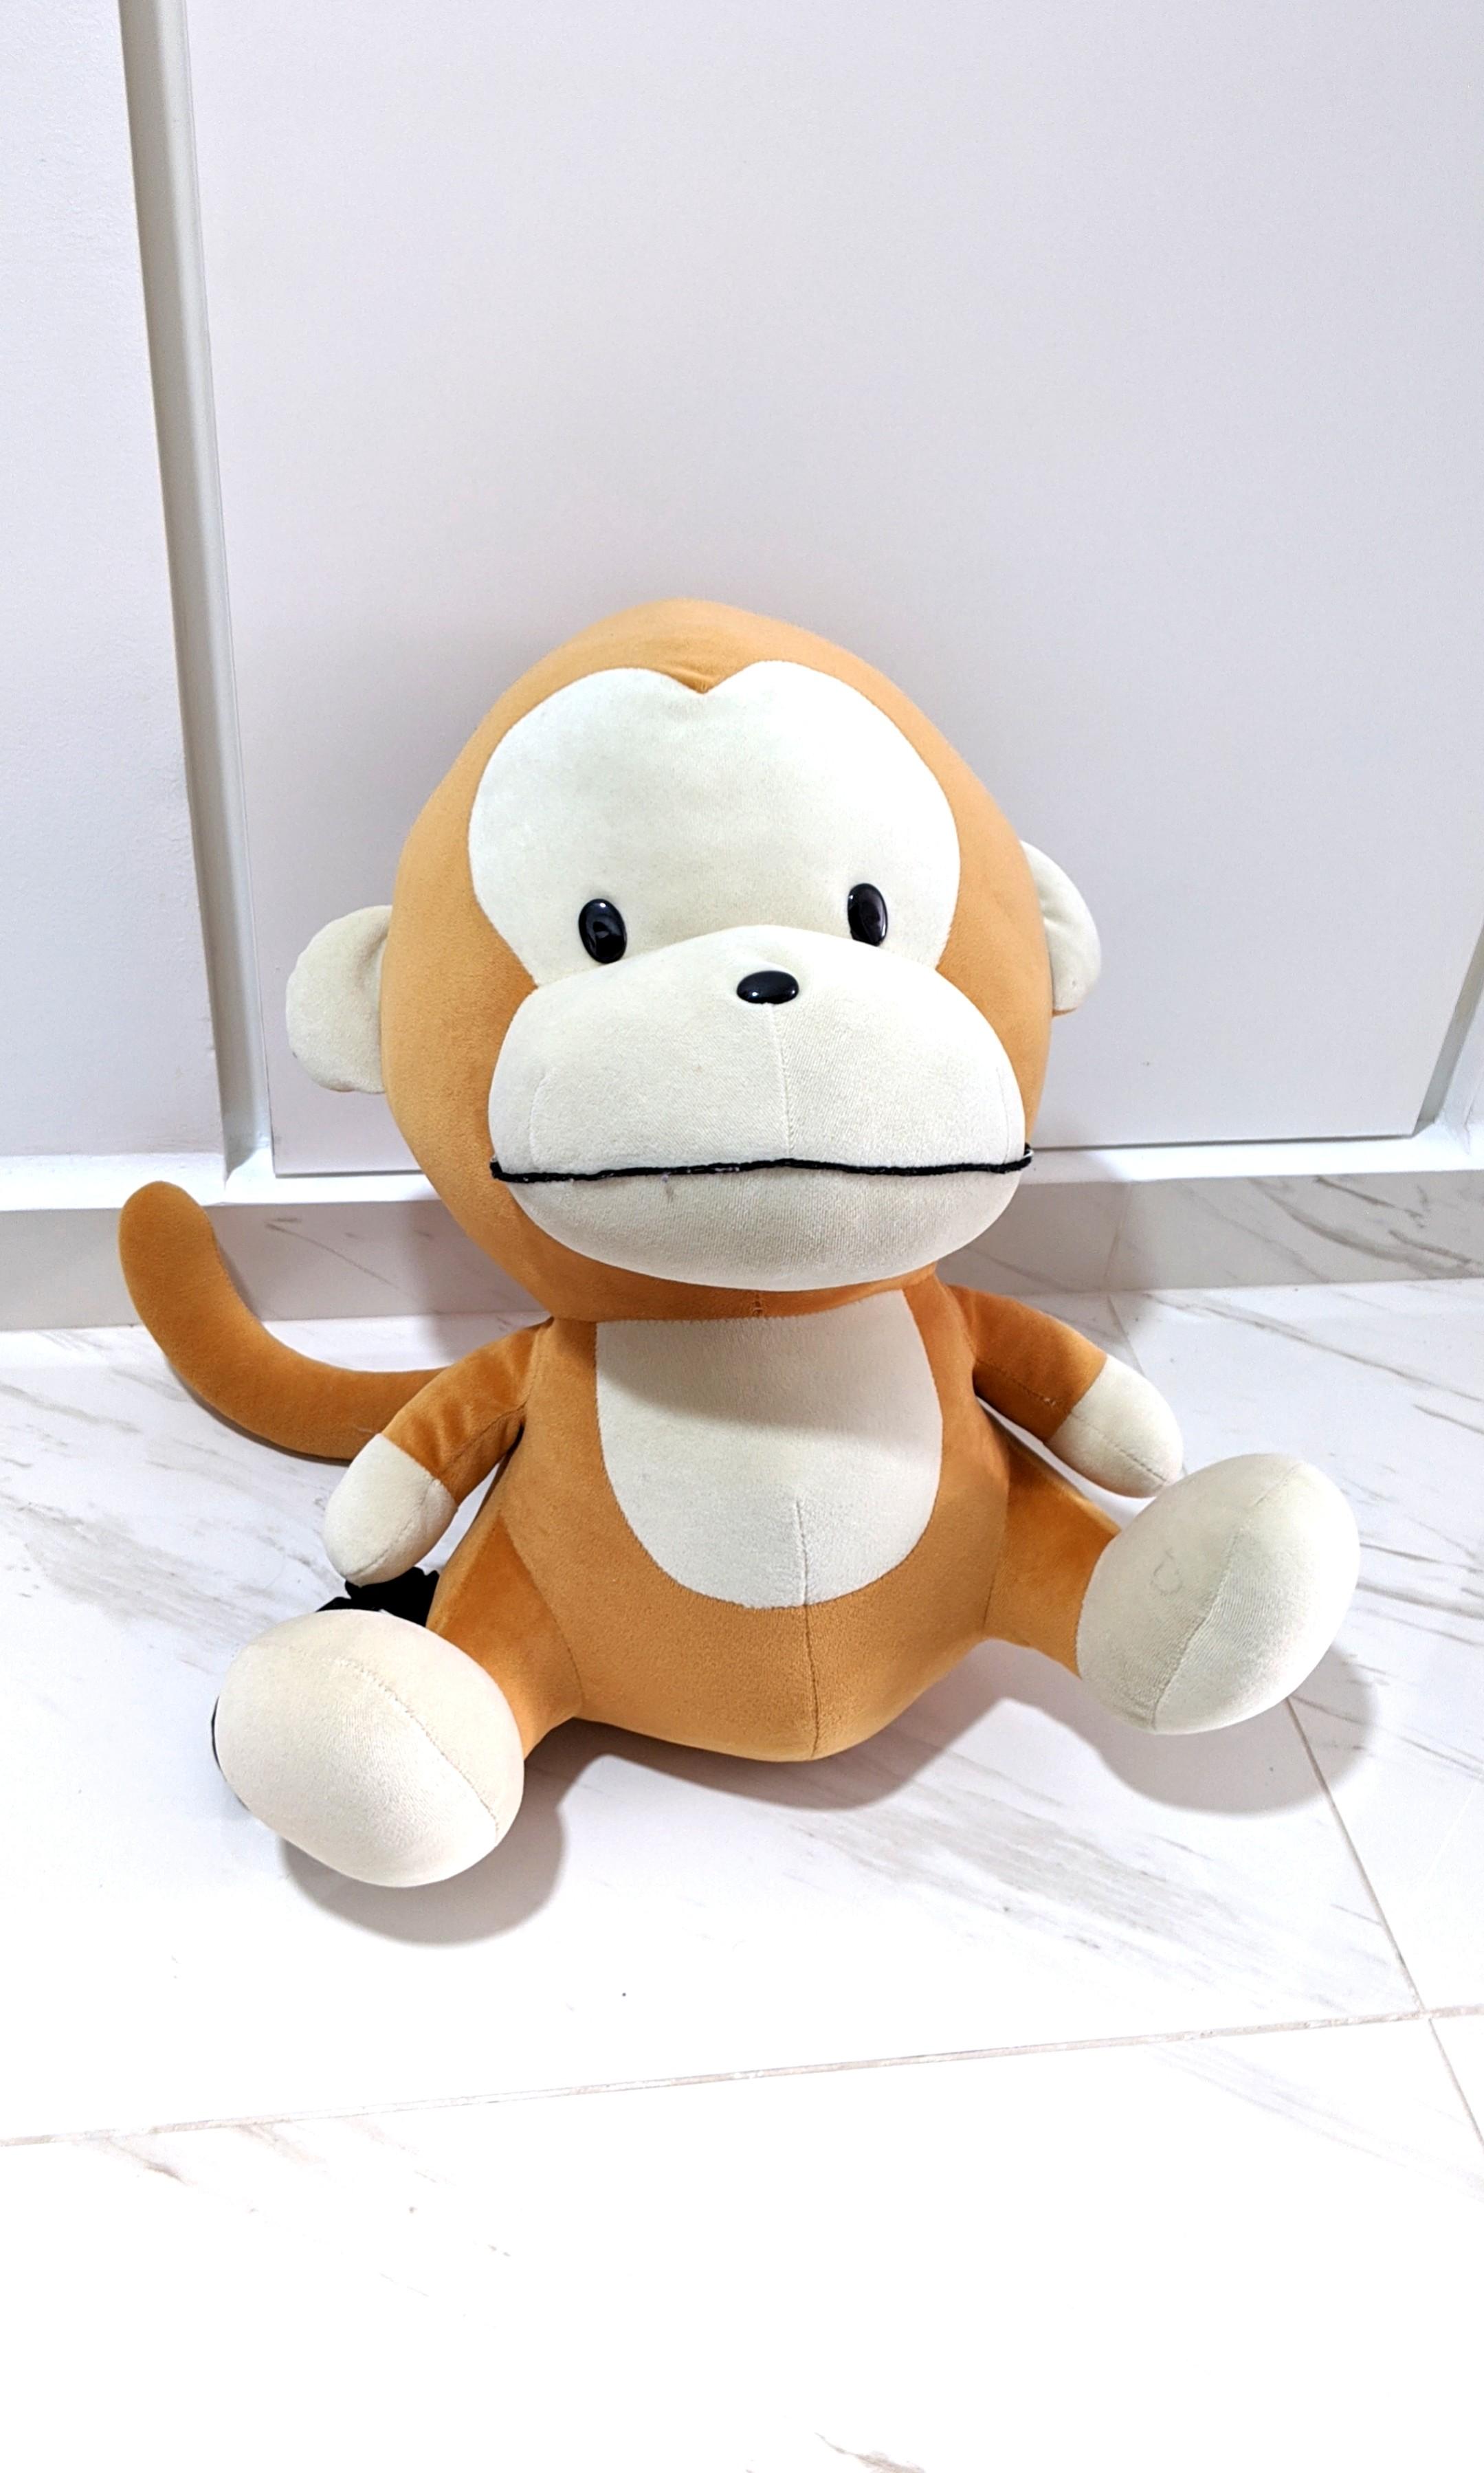 monkey plushie